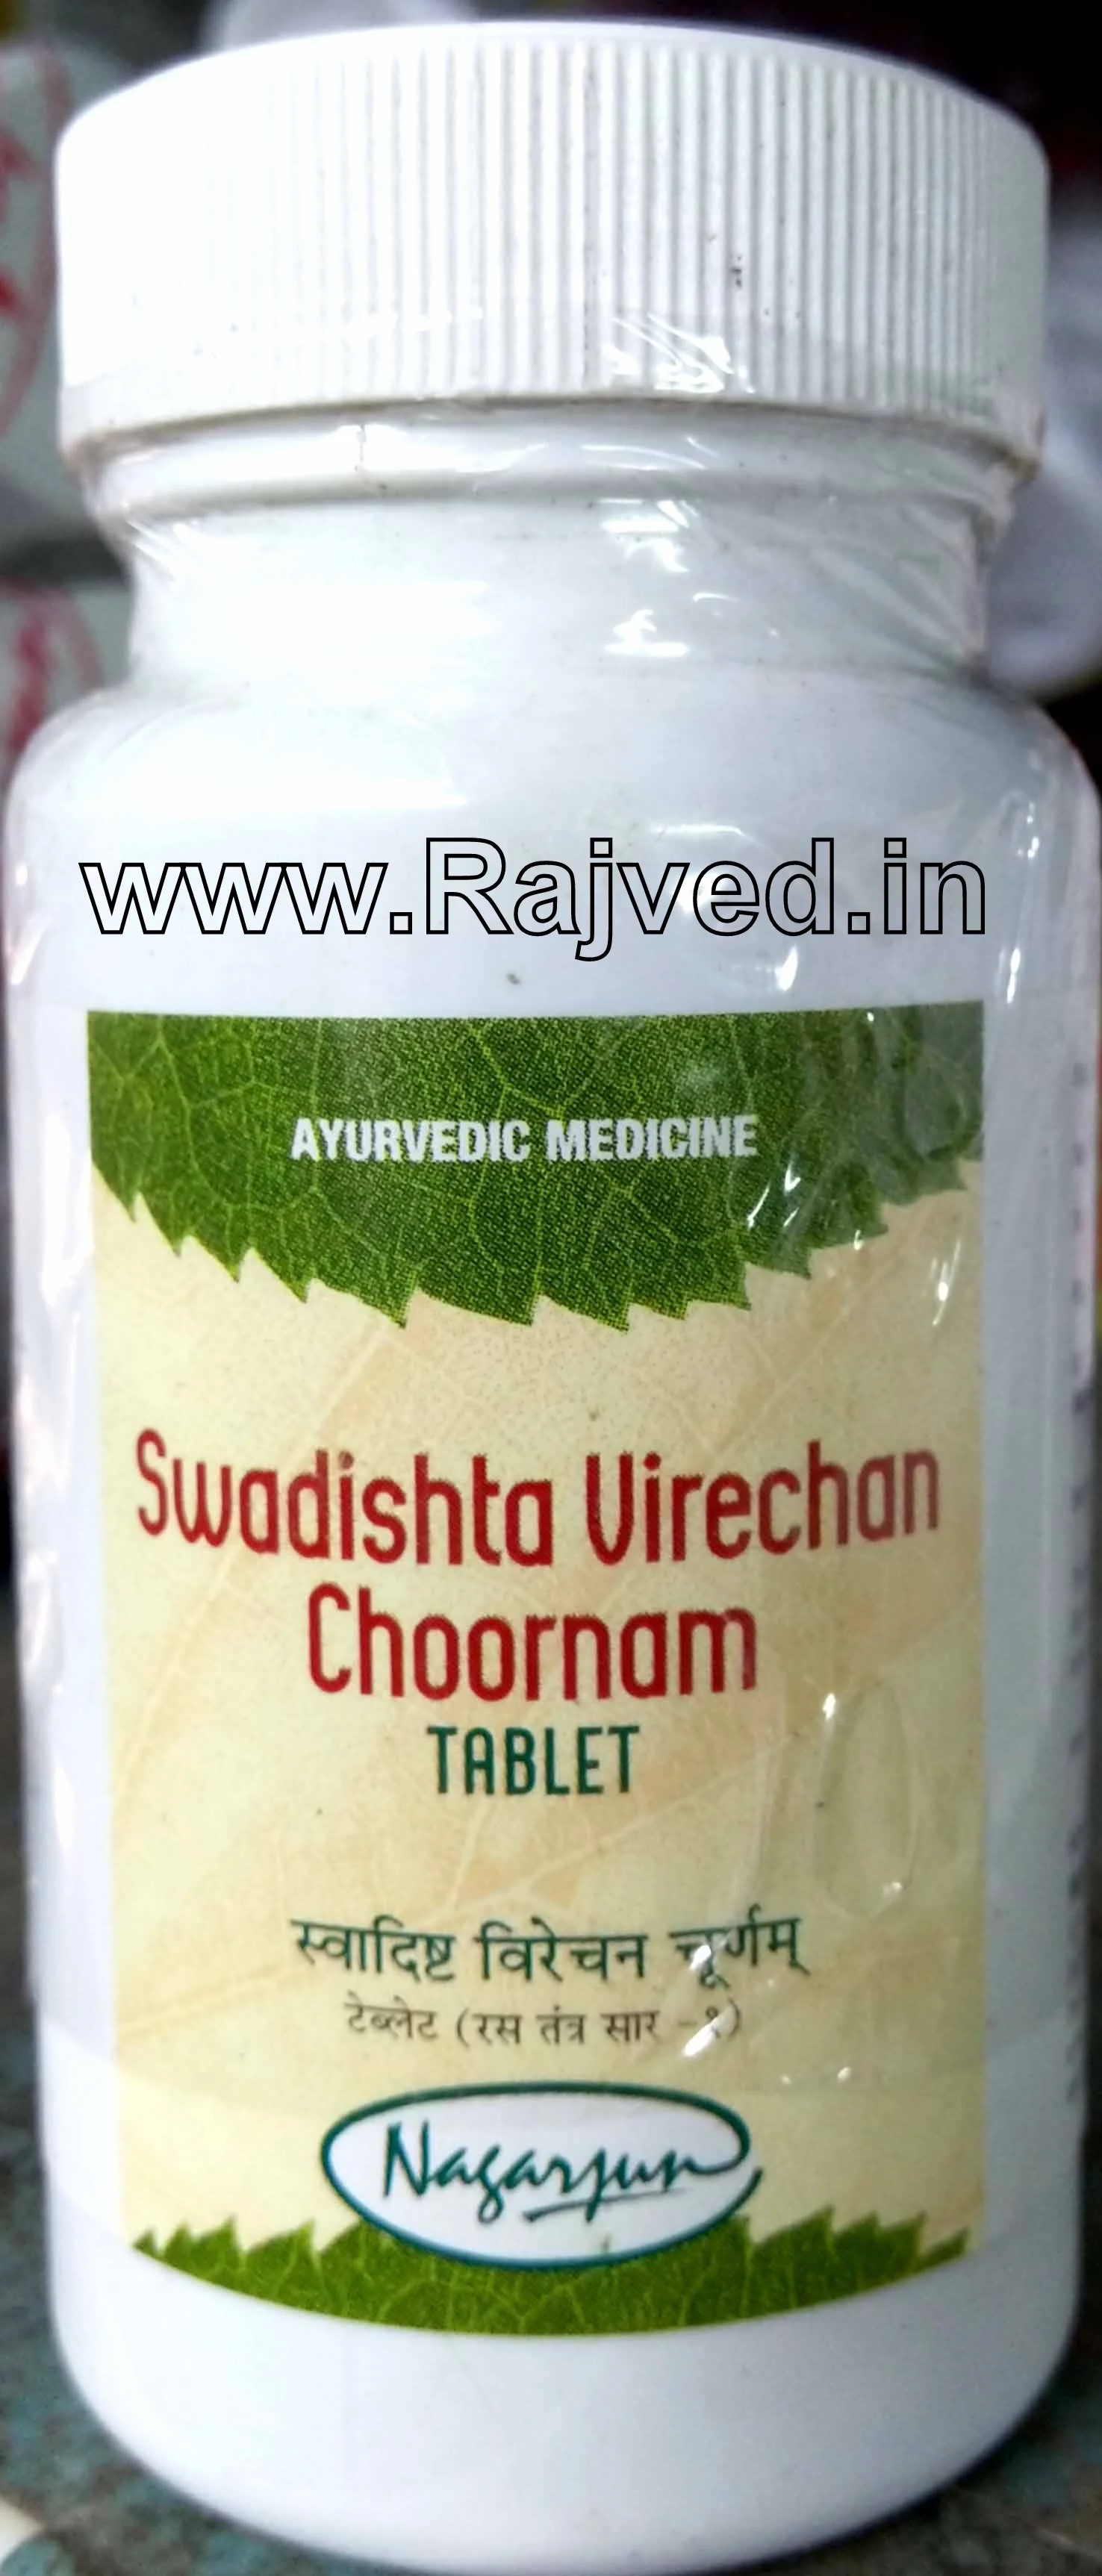 swadishta virechan tablet 1000 gm upto 20% off free shipping nagarjun pharma gujarat